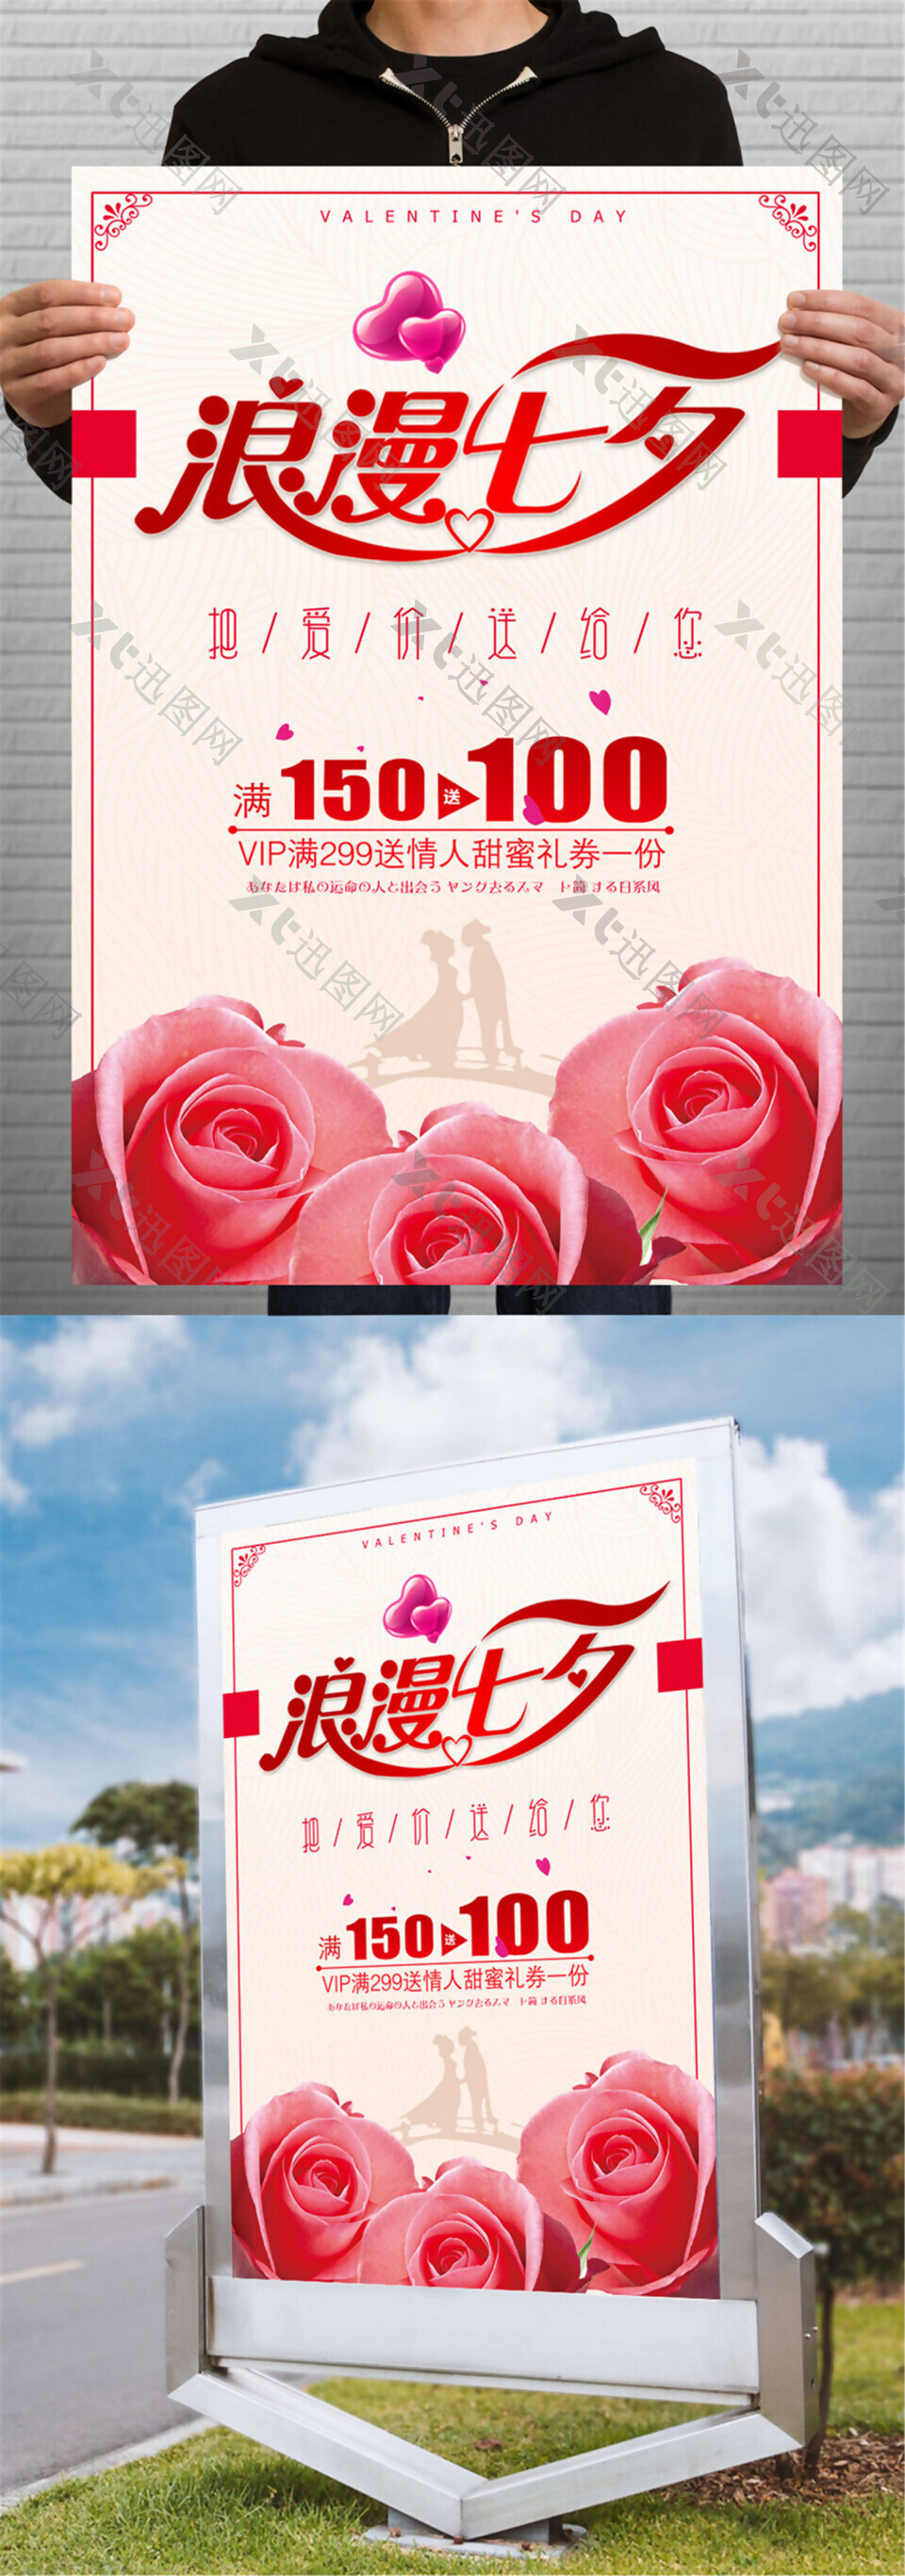 浪漫七夕节促销海报